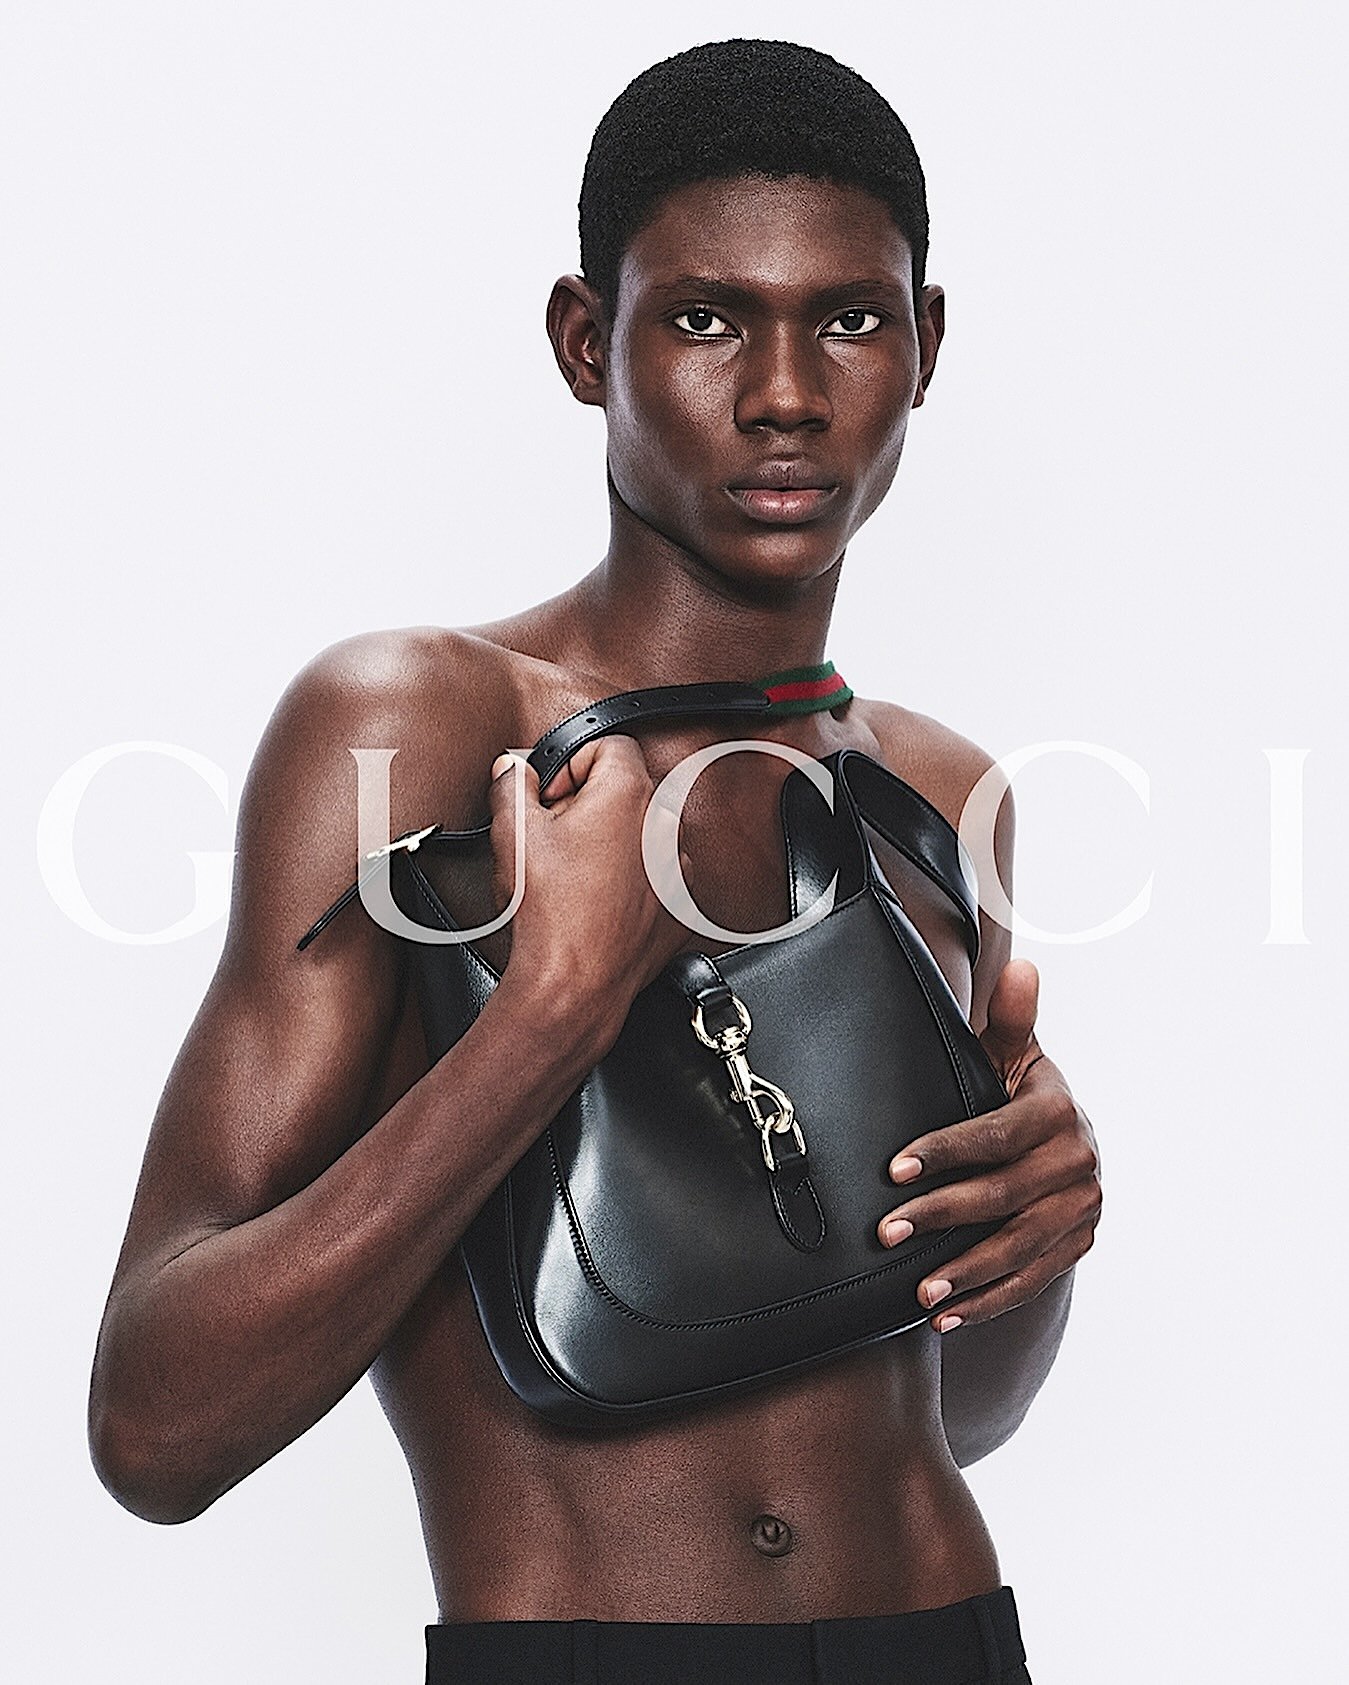 Gucci-Ancora-Campaign-by-David-Sims-2024-7.jpg